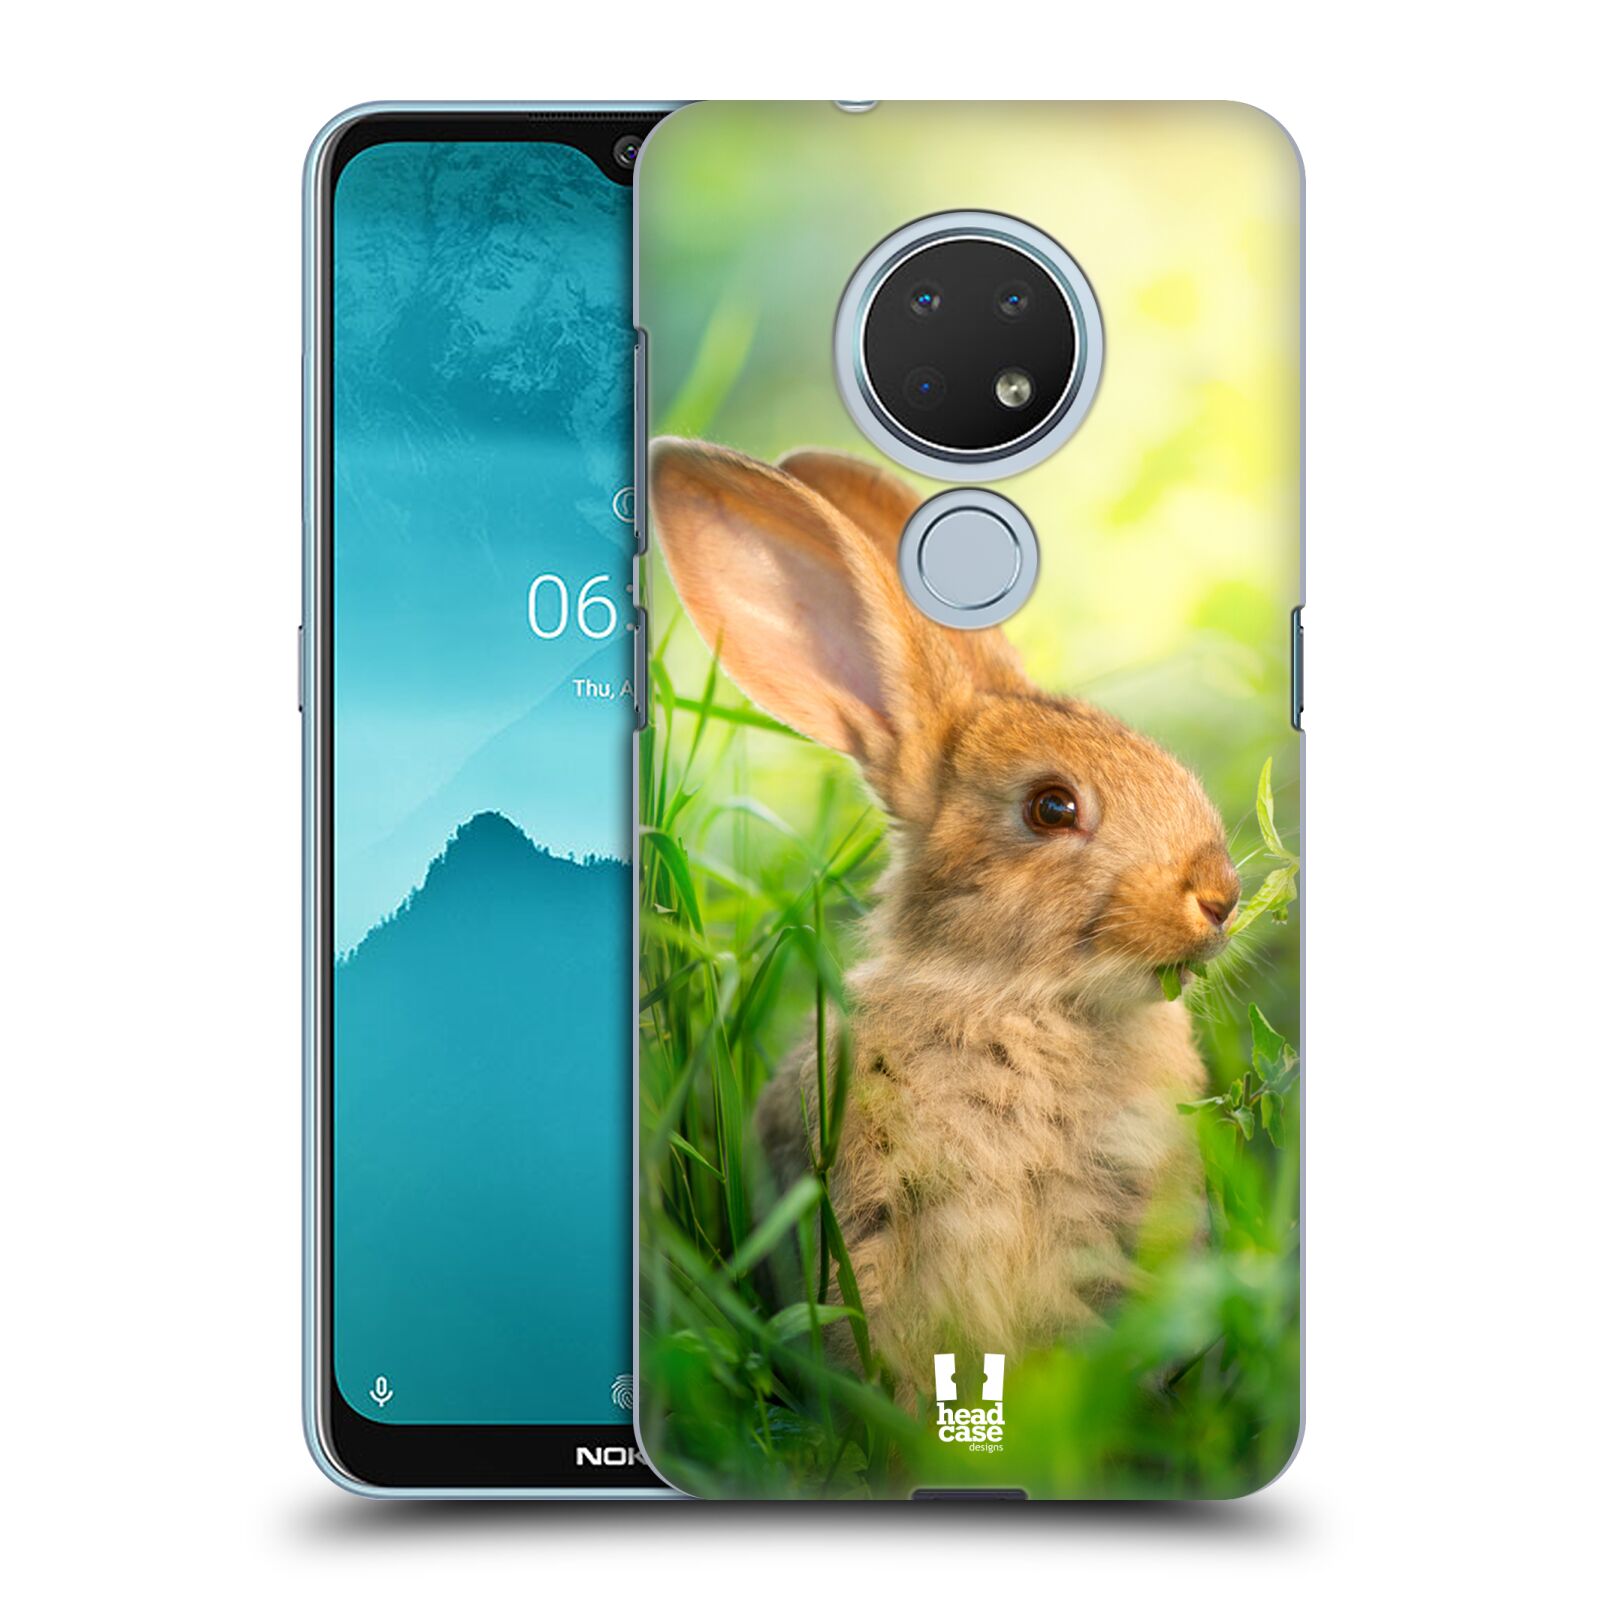 Pouzdro na mobil Nokia 6.2 - HEAD CASE - vzor Divočina, Divoký život a zvířata foto ZAJÍČEK V TRÁVĚ ZELENÁ